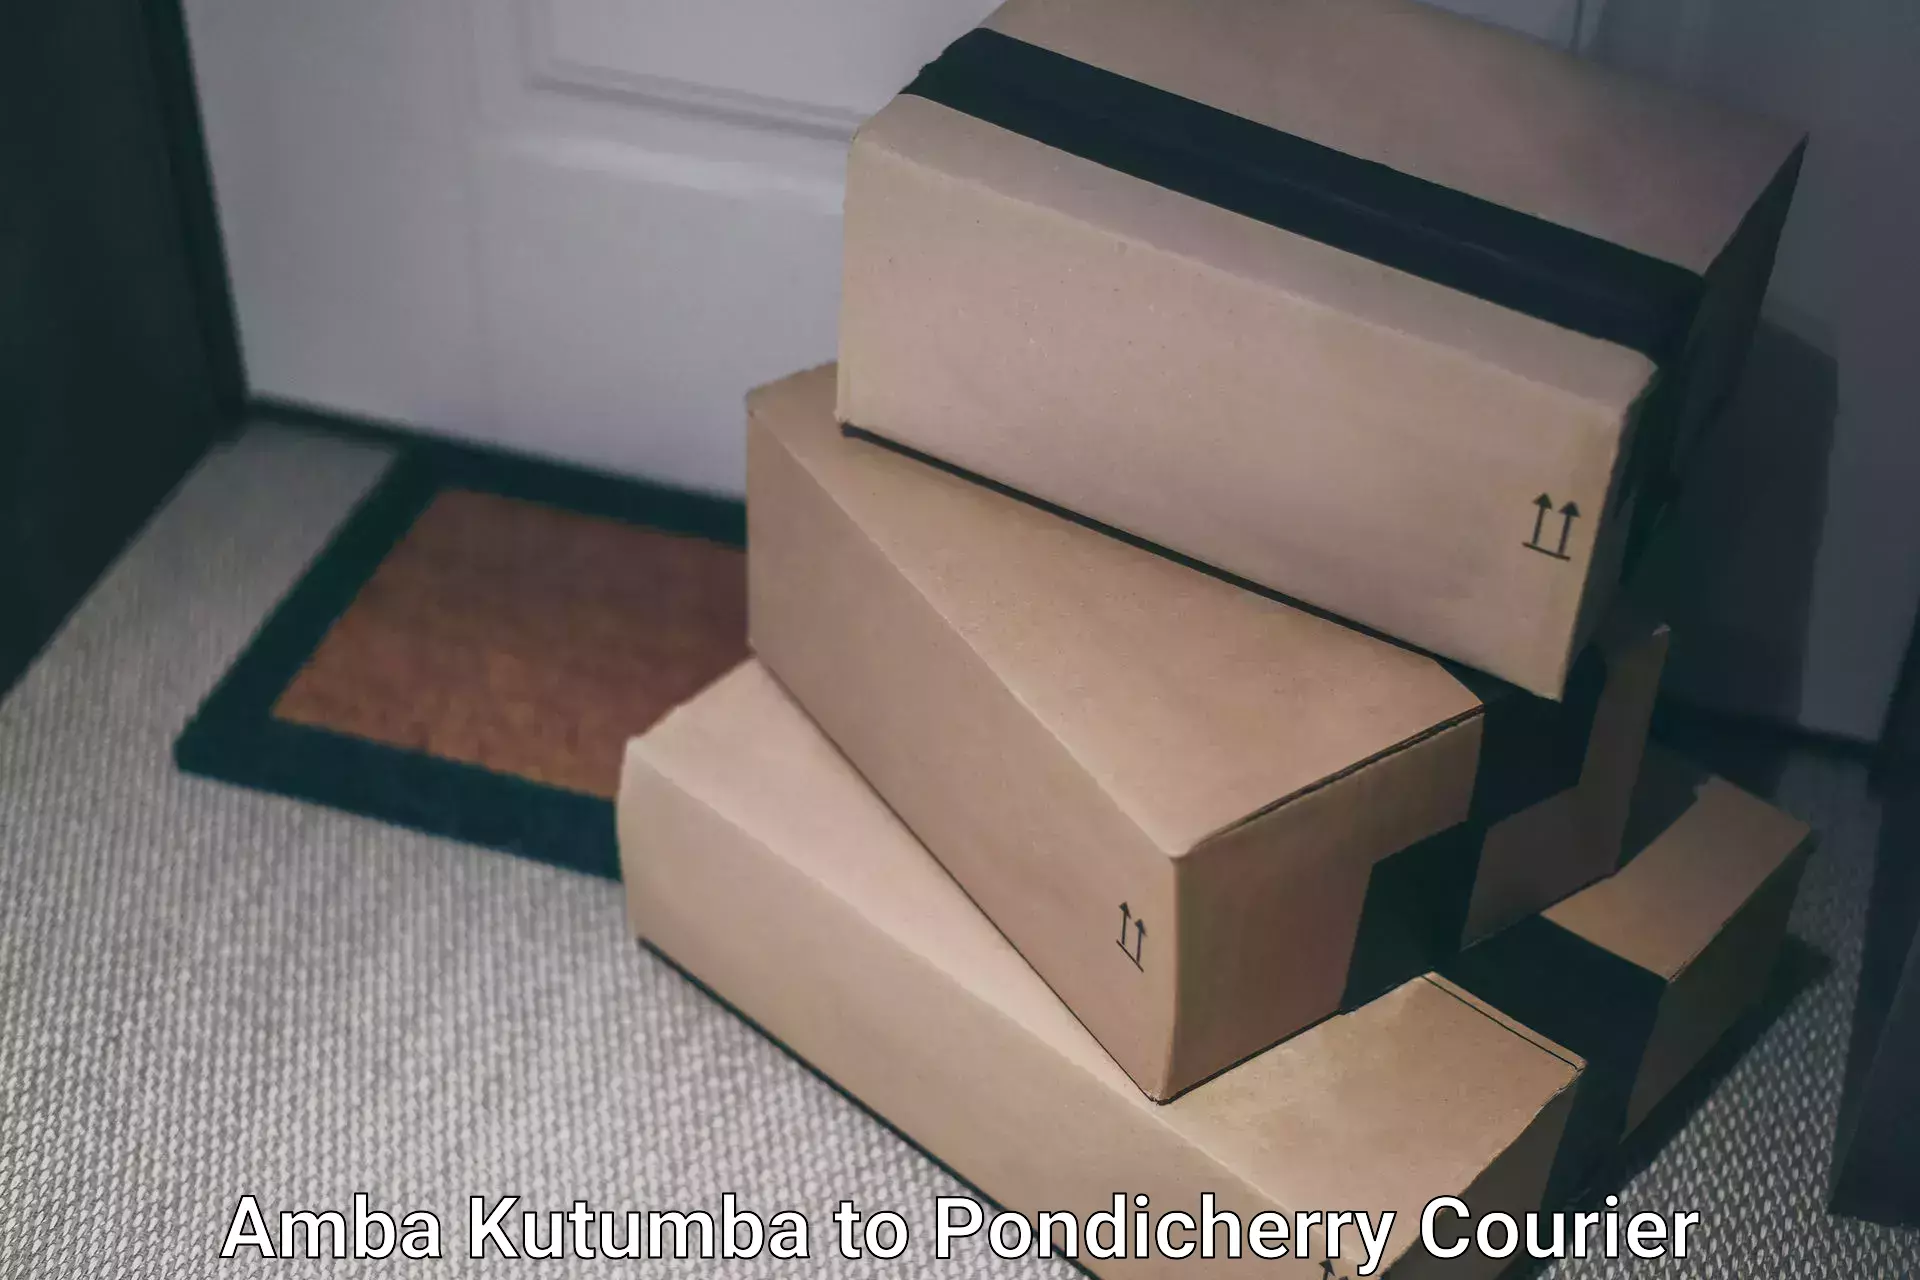 Return courier service Amba Kutumba to Pondicherry